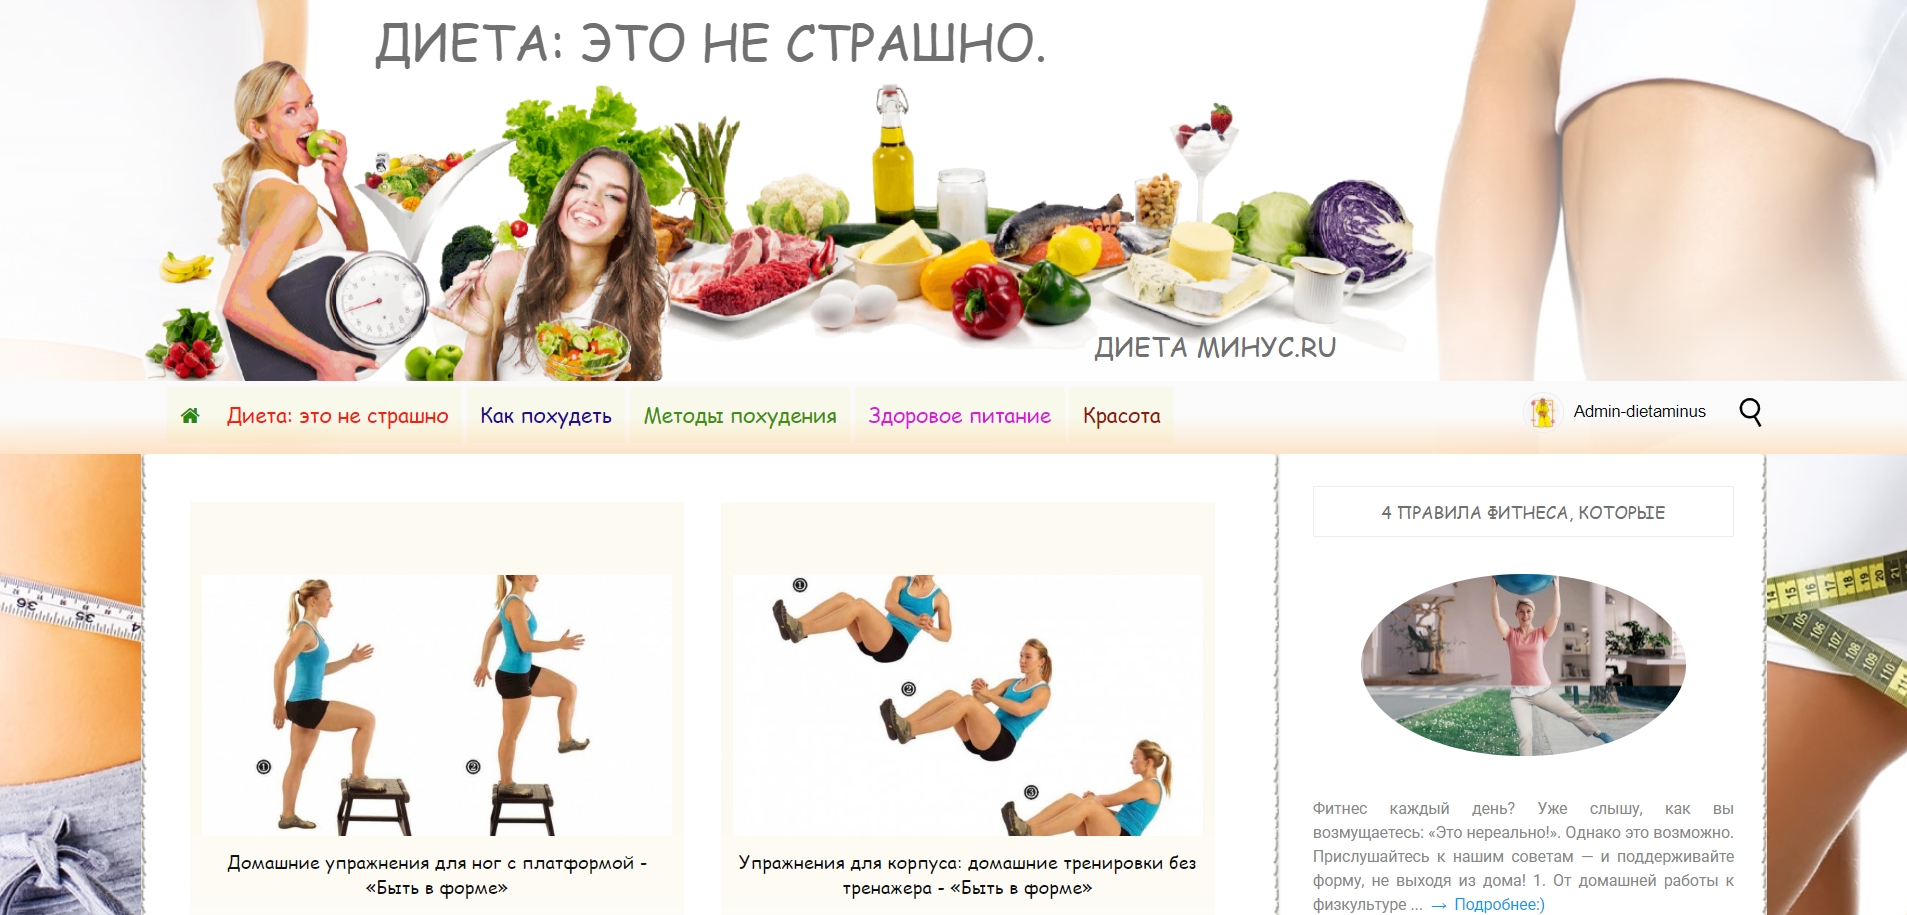 dietaminus.ru - ƒиета ћинус.